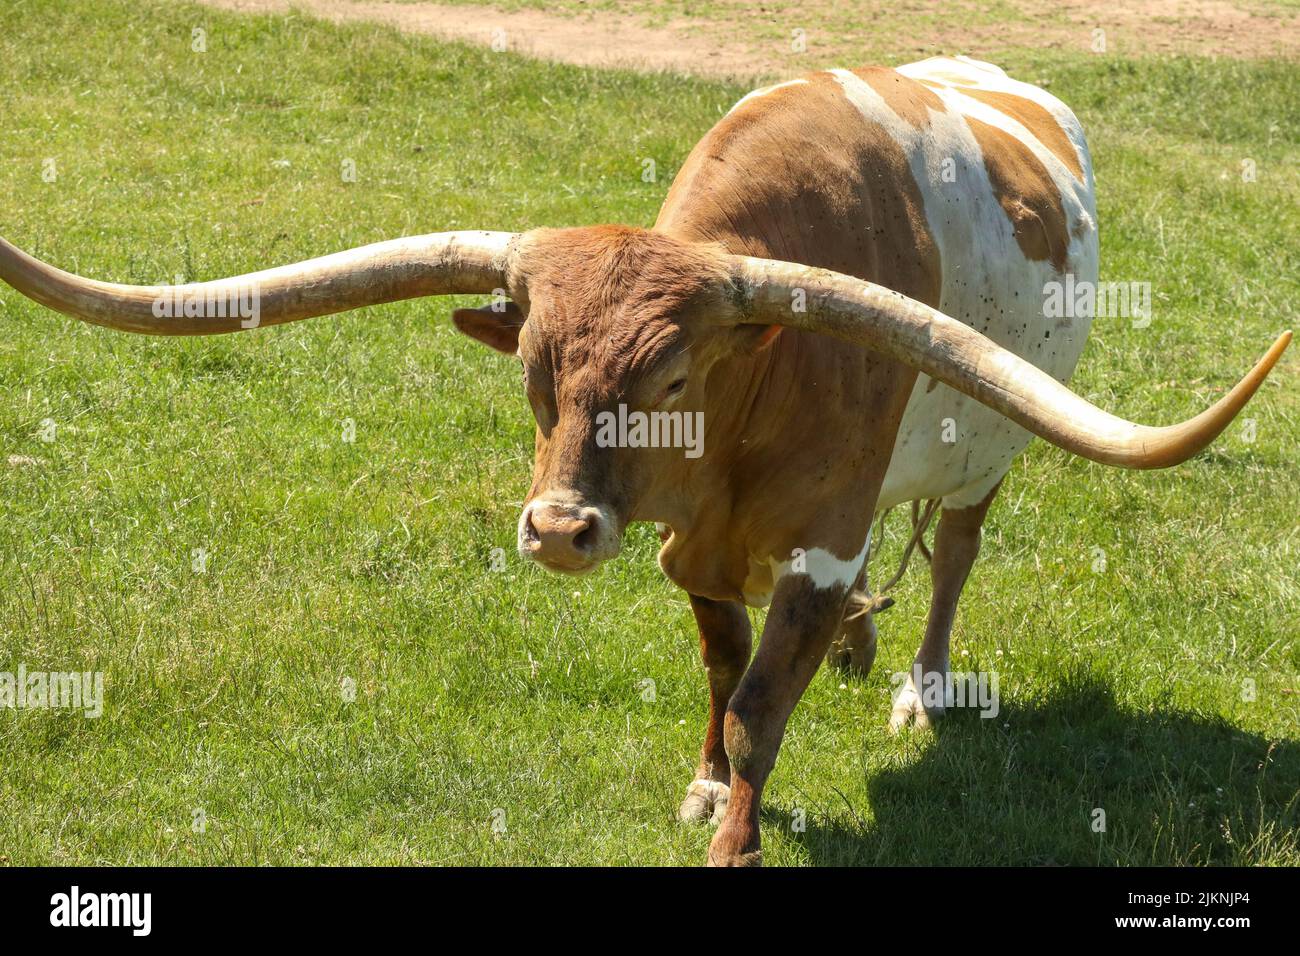 Nahaufnahme eines Texas Longhorns, das an einem warmen Tag im Gras in einem Zoo oder Safaripark steht Stockfoto